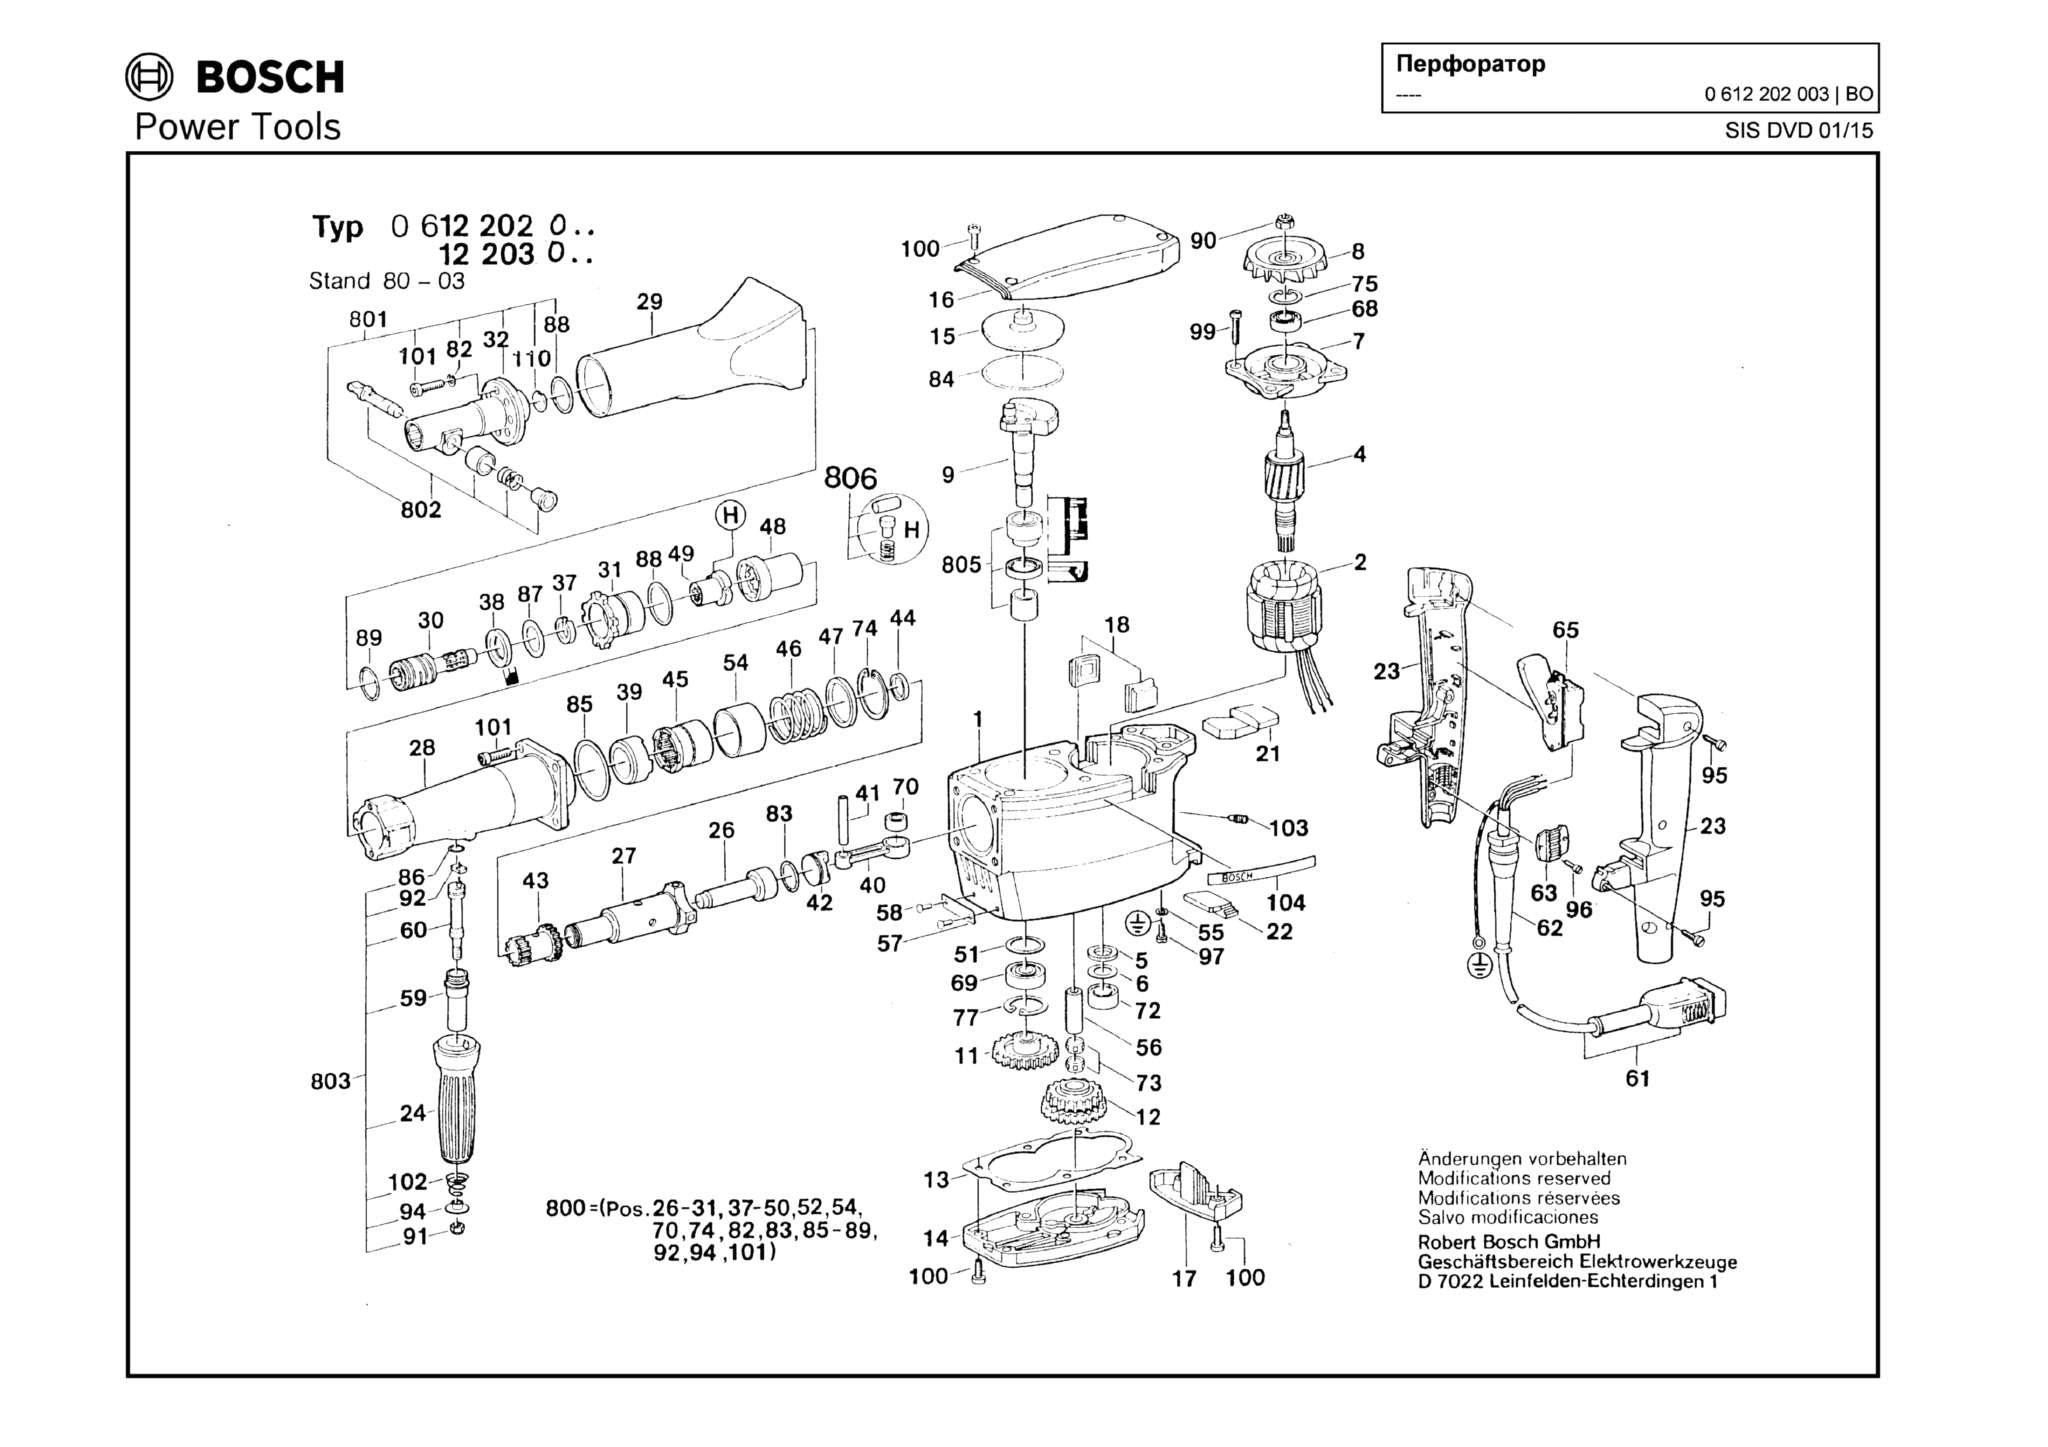 Запчасти, схема и деталировка Bosch (ТИП 0612202003)